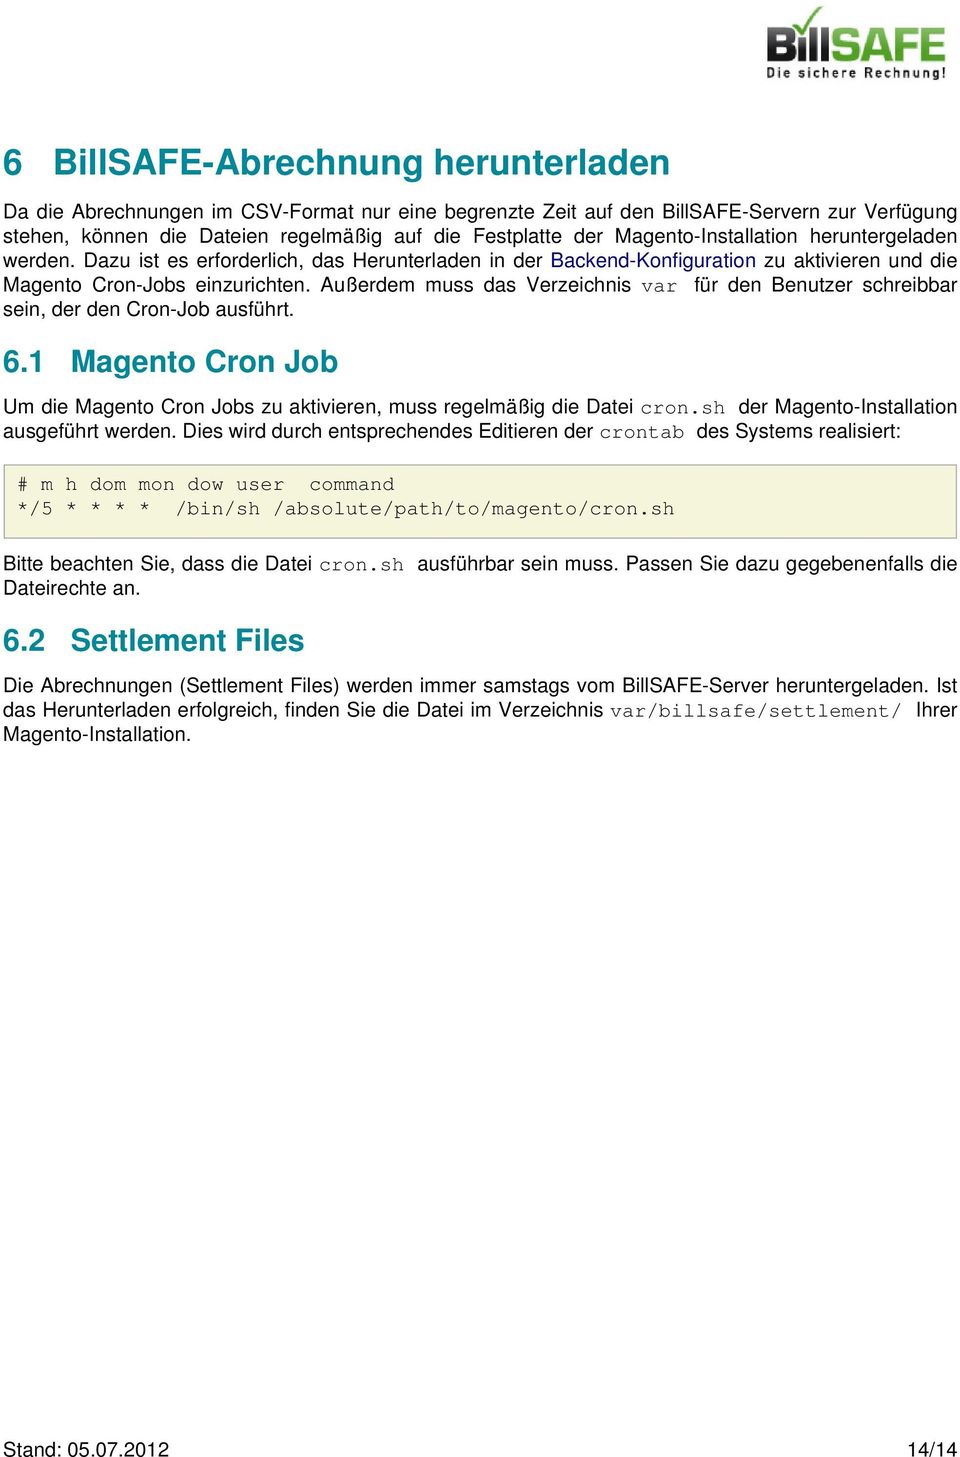 Außerdem muss das Verzeichnis var für den Benutzer schreibbar sein, der den Cron-Job ausführt. 6.1 Magento Cron Job Um die Magento Cron Jobs zu aktivieren, muss regelmäßig die Datei cron.